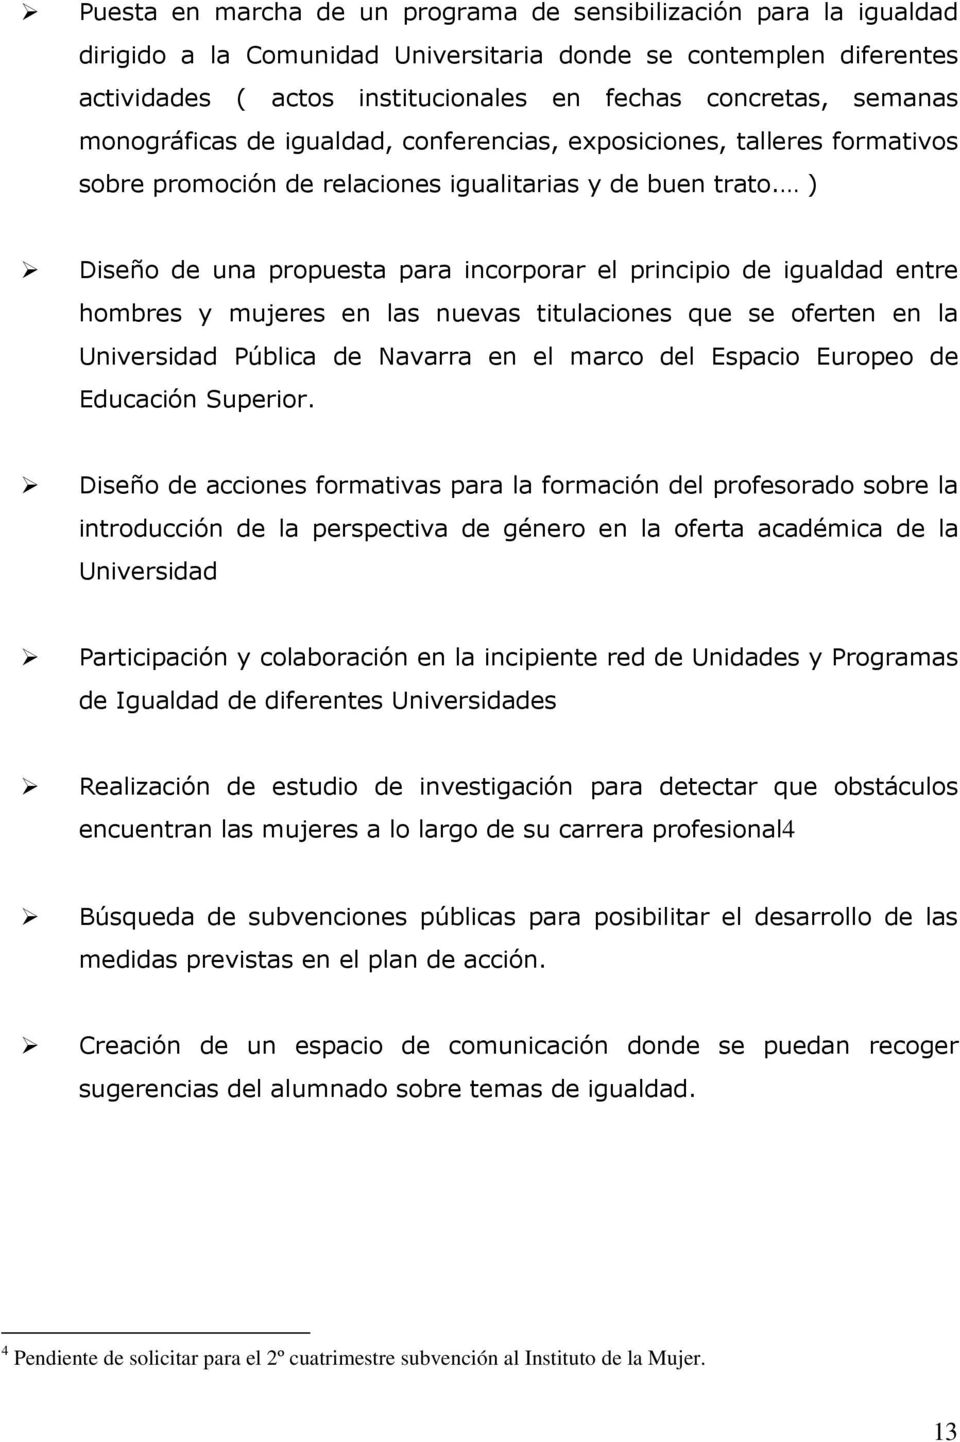 ) Diseño de una propuesta para incorporar el principio de igualdad entre hombres y mujeres en las nuevas titulaciones que se oferten en la Universidad Pública de Navarra en el marco del Espacio